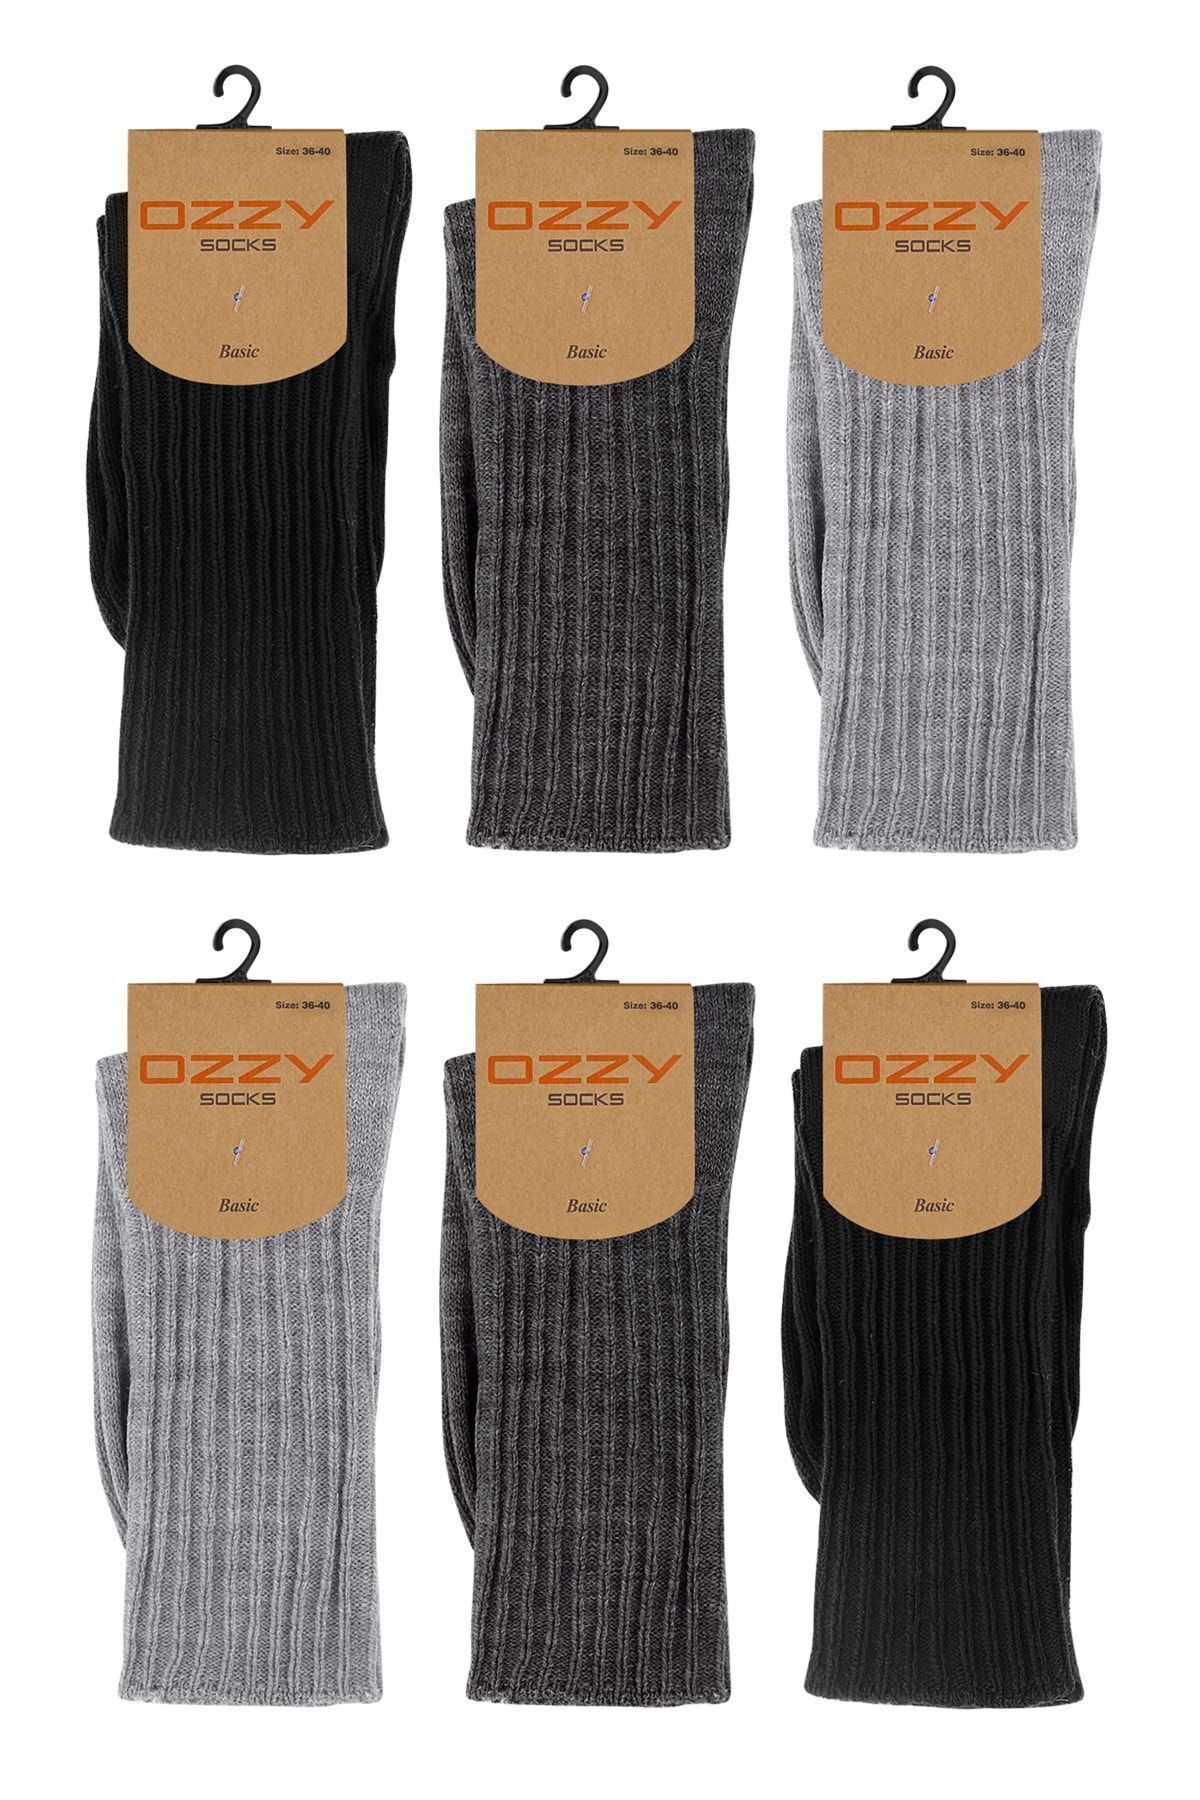 Ozzy Socks 6 Çift Kadın Kışlık Yünlü Uyku Çorabı Soft Touch